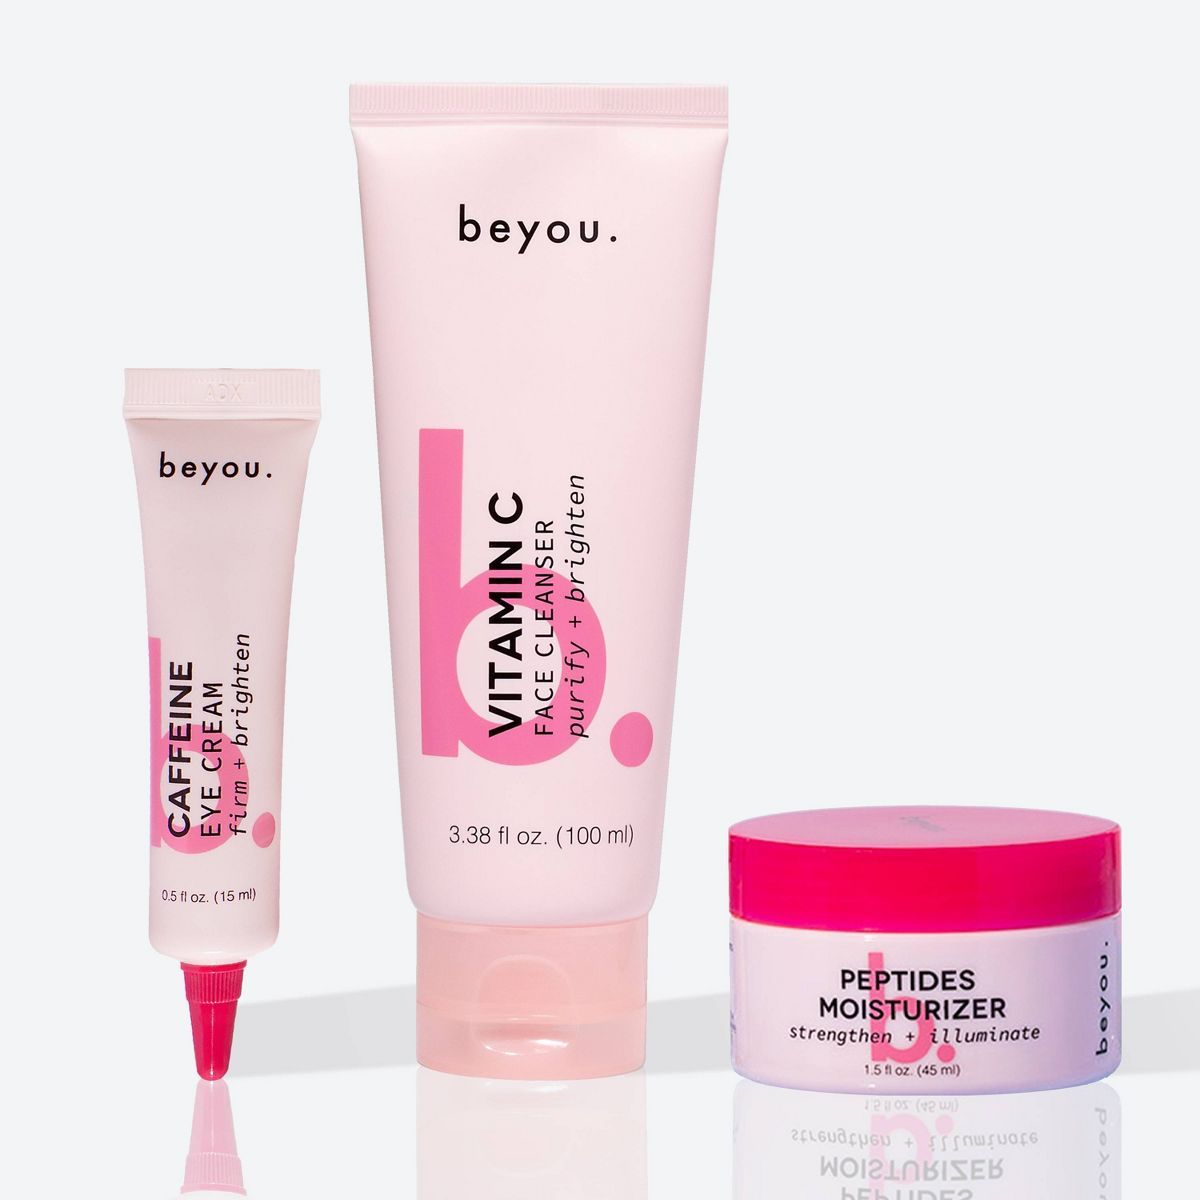 BeYou. Skincare Set - 5.38 fl oz/3ct | Target